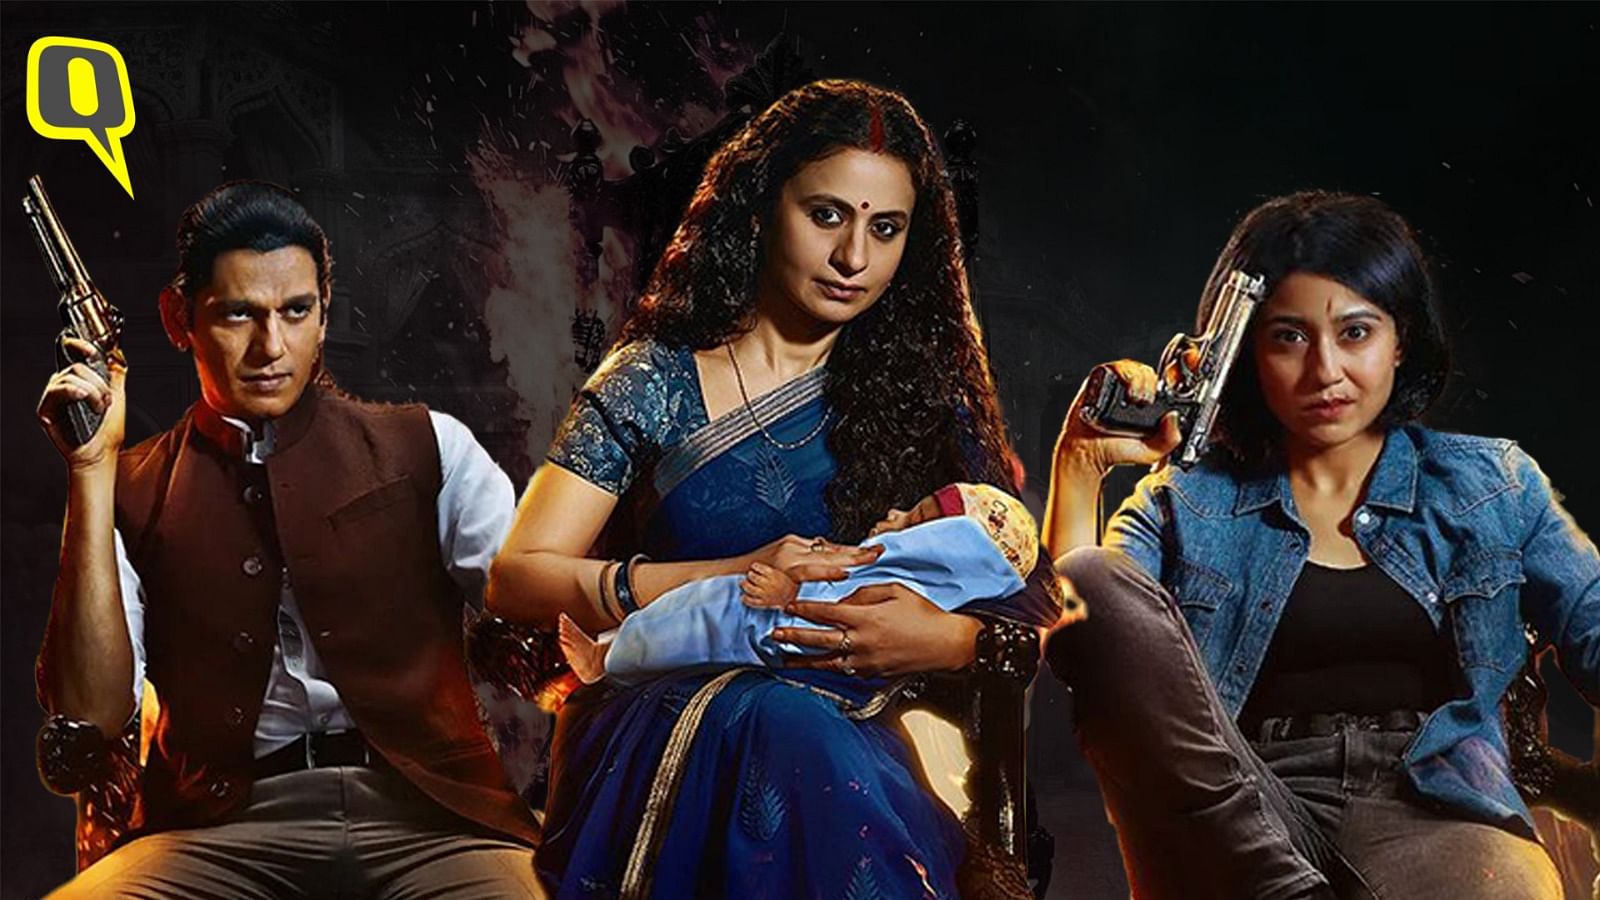 <div class="paragraphs"><p>The cast of Mirzapur speak about season 3.</p></div>